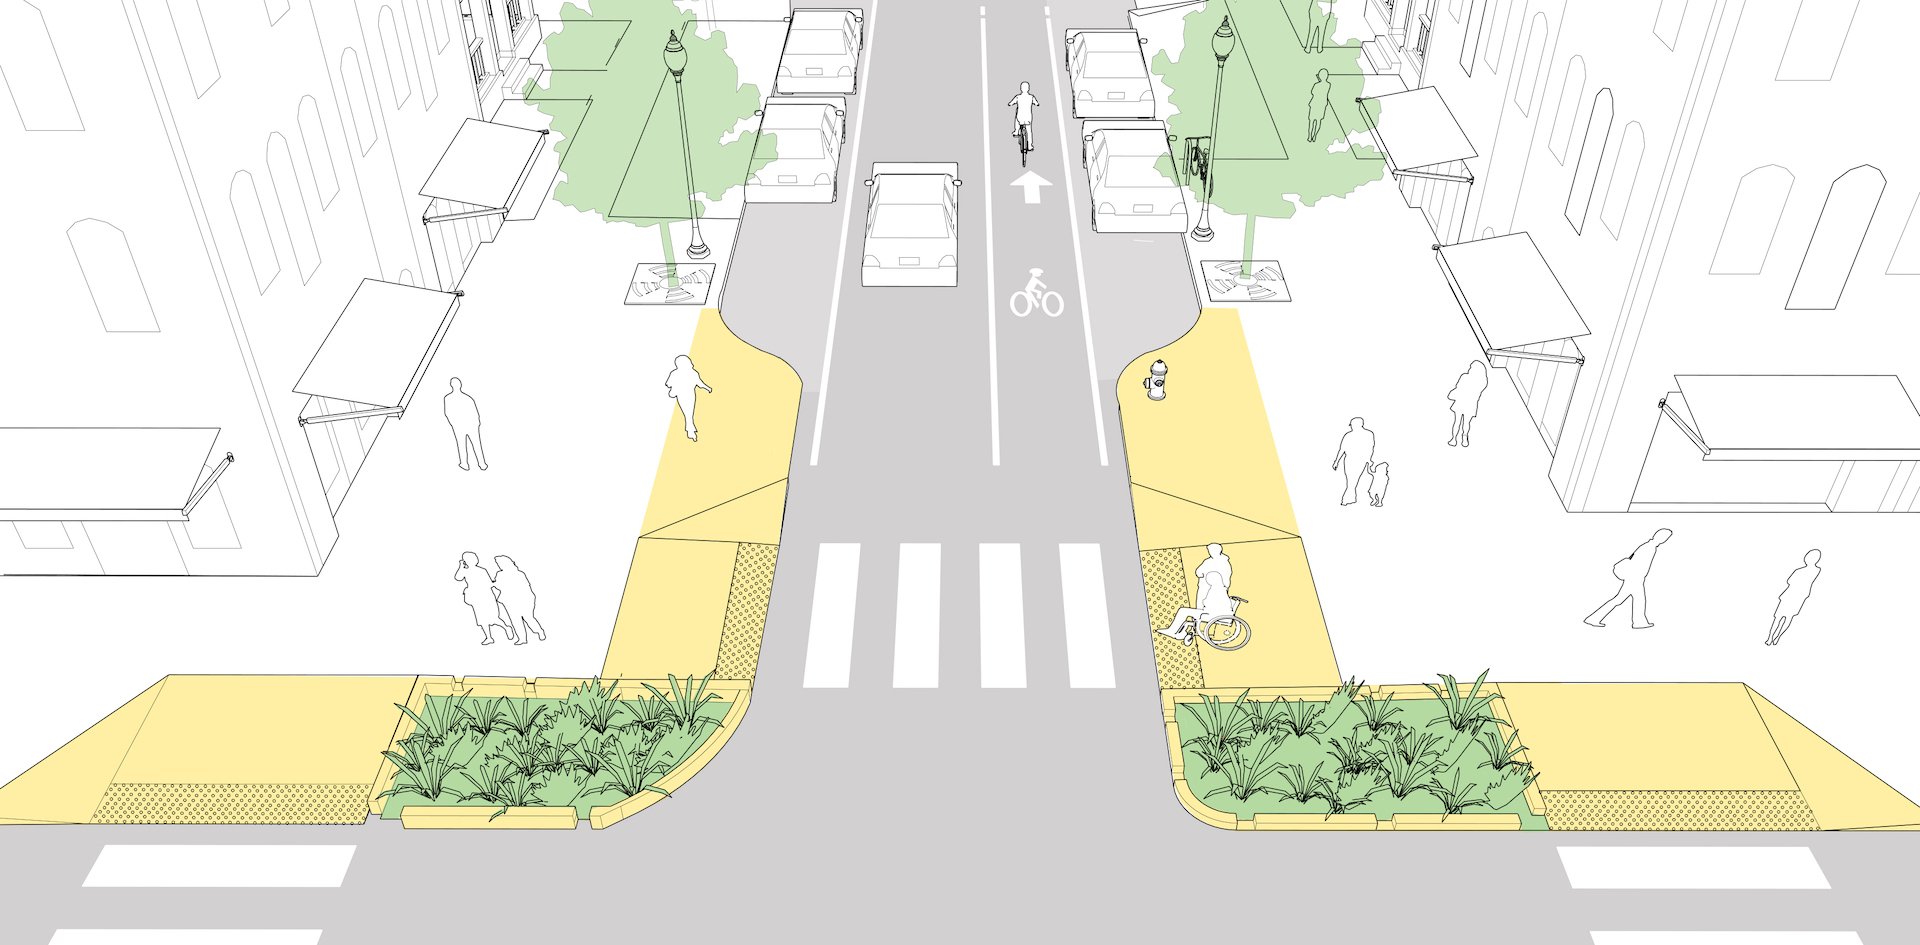 Части городской дороги. Проектирование велосипедных дорожек. Проектирование пешеходных и велосипедных дорожек. Проектирование велодорожек. Озеленение улиц и дорог.